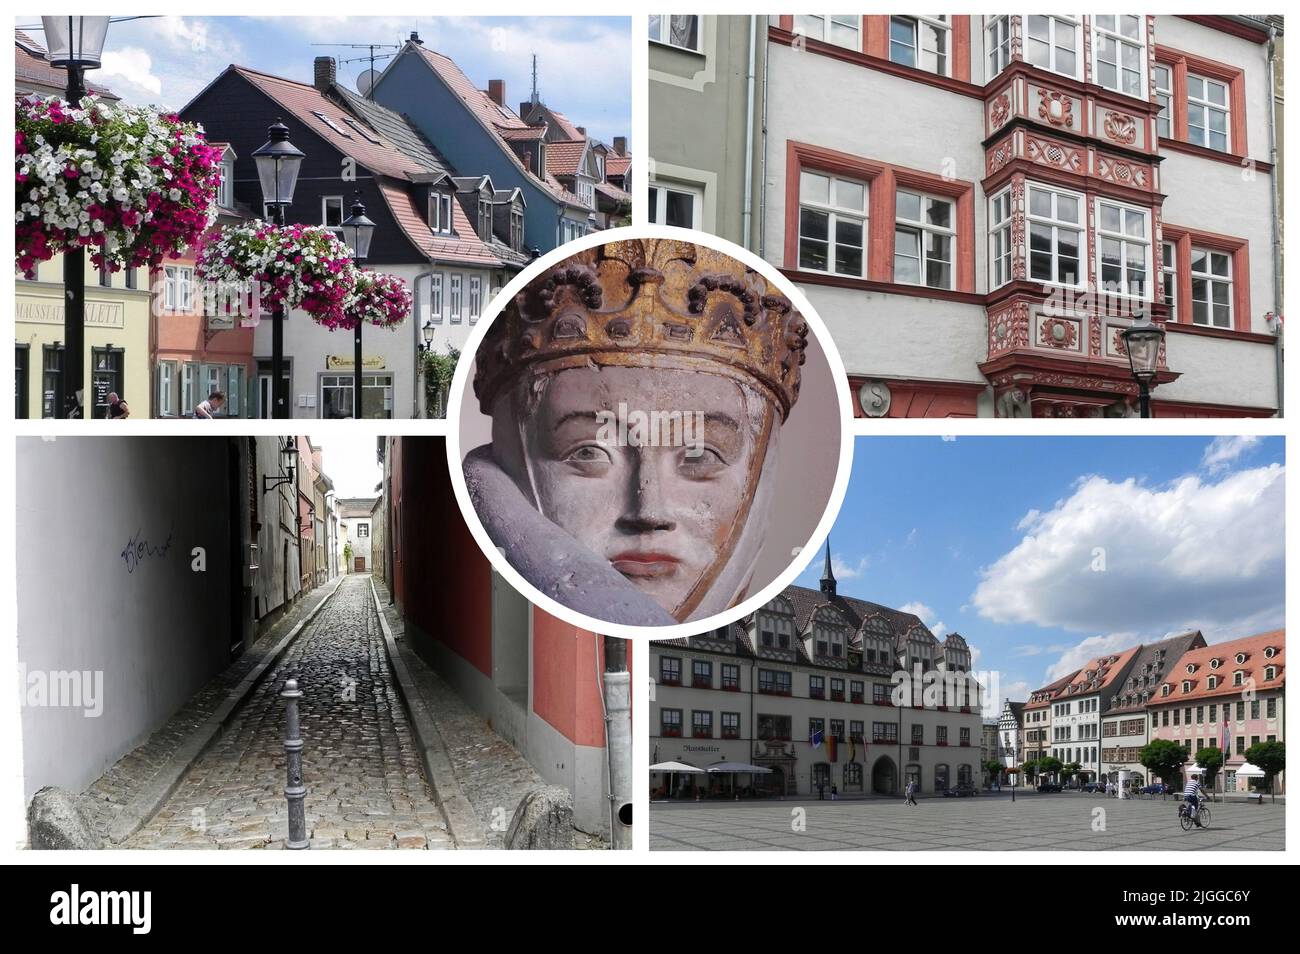 Naumburg è una bella e antica città in Germania, situata nel Land Sassonia-Anhalt, piena di monumenti e luoghi di interesse storico. Foto Stock